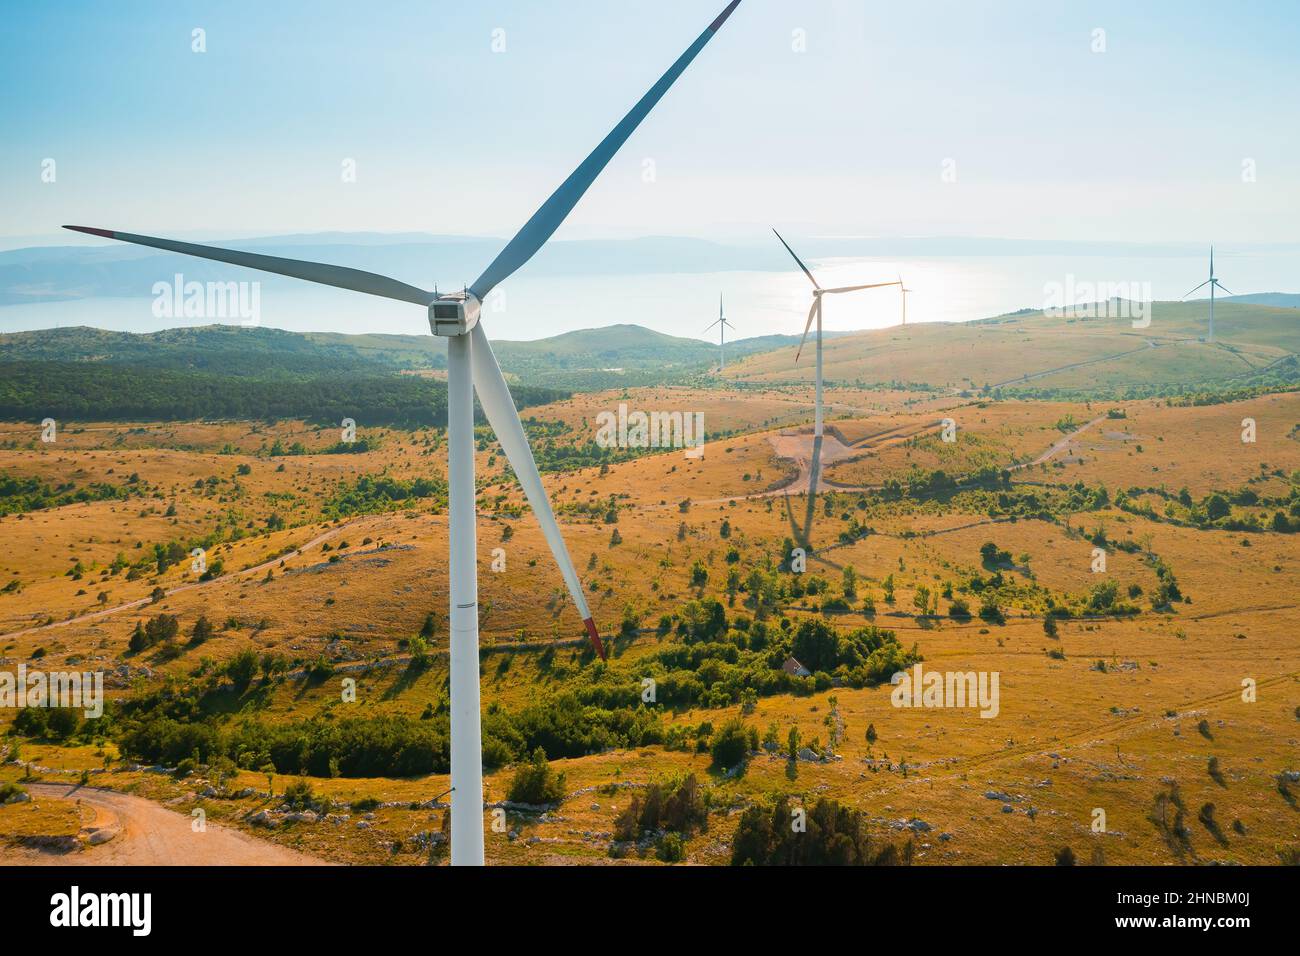 Windmaschinen mit rotierenden Rotorblättern erzeugen saubere elektrische Energie im Hochland mit Wäldern in der Nähe der Adria bei einem hellen, sonnigen Luftbild Stockfoto